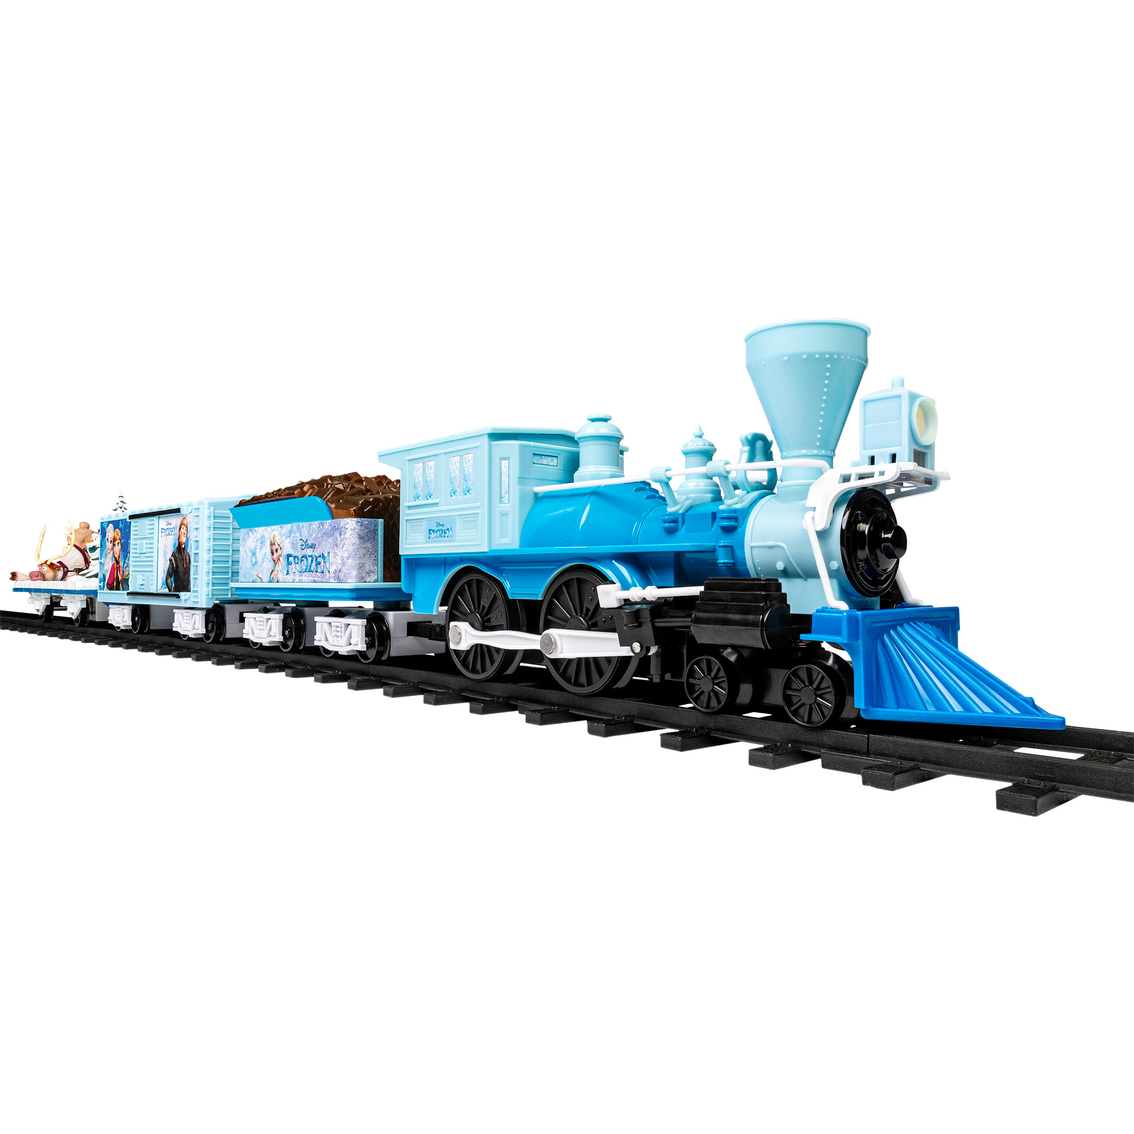 Lionel Trains Frozen 2 Train Set - Image 2 of 6